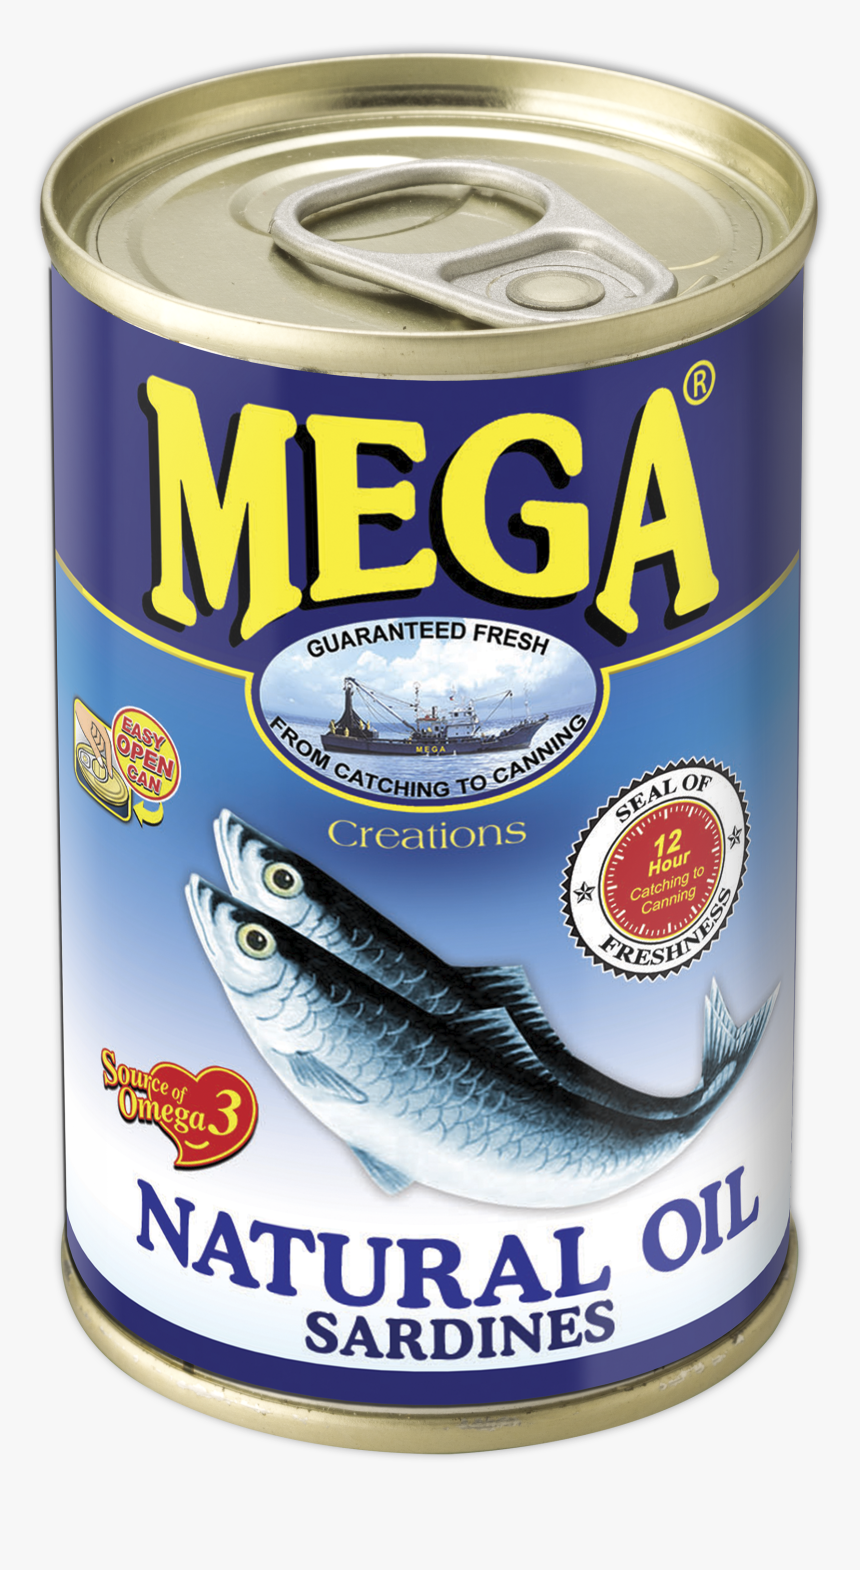 Sardine - Mega Sardines In Natural Oil, HD Png Download, Free Download